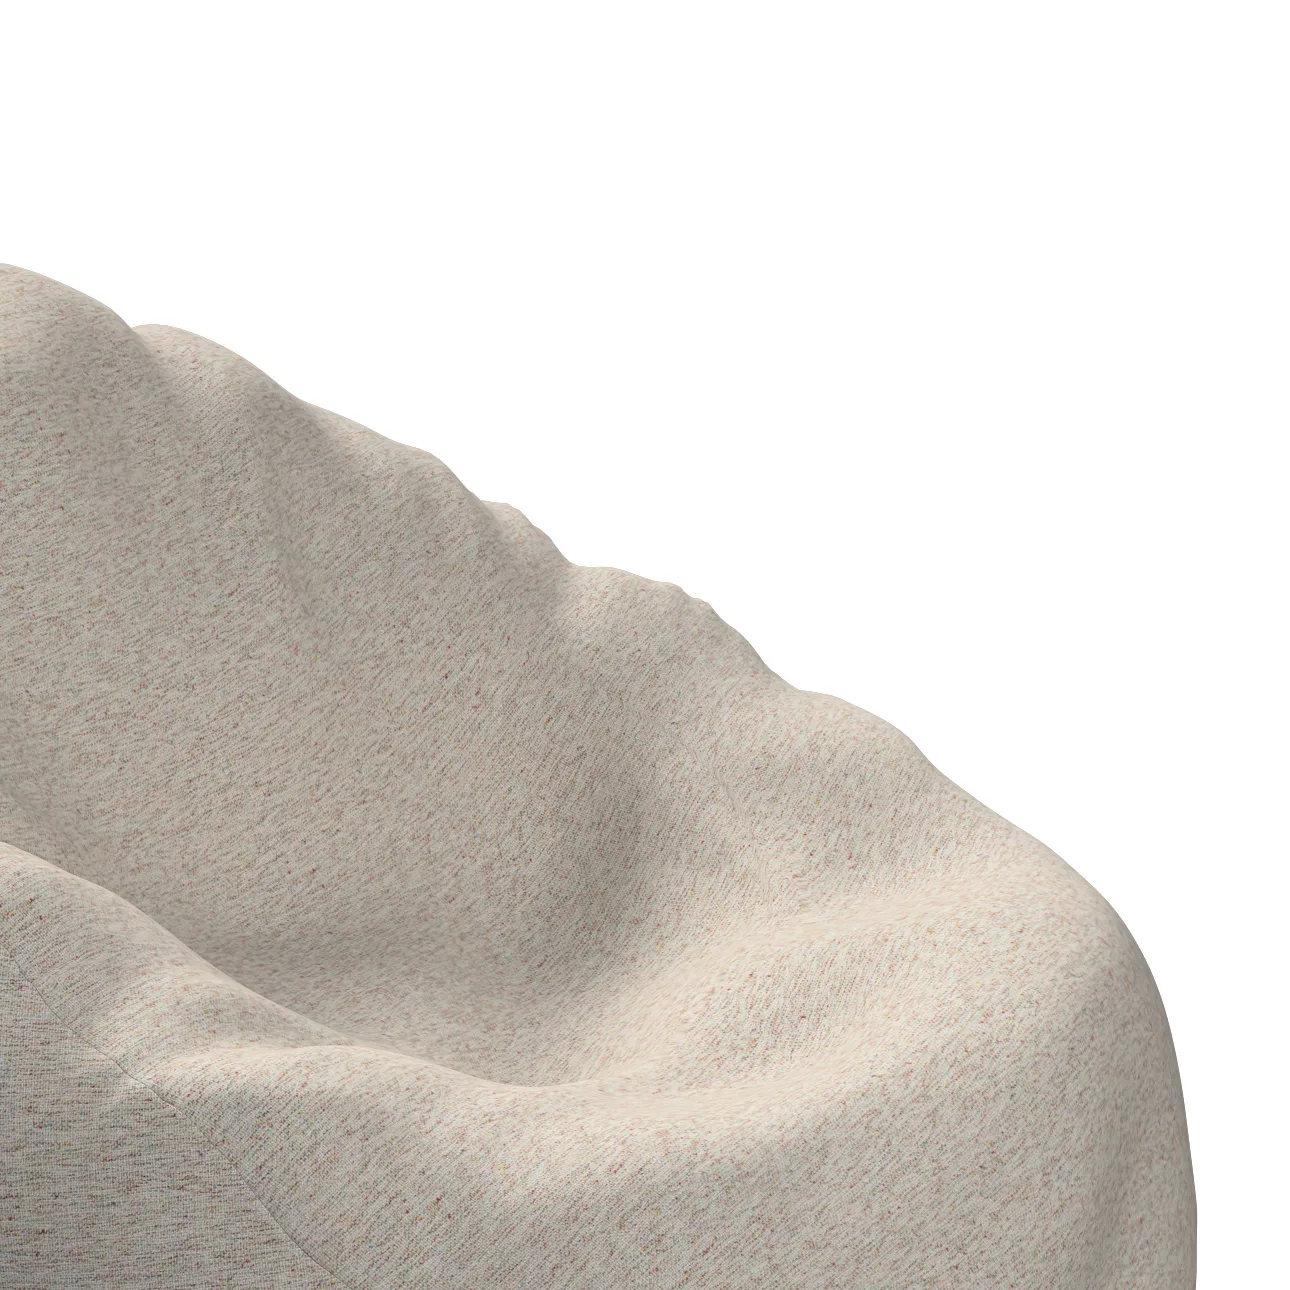 Bezug für Sitzsack, grau-beige, Bezug für Sitzsack Ø60 x 105 cm, Madrid (16 günstig online kaufen